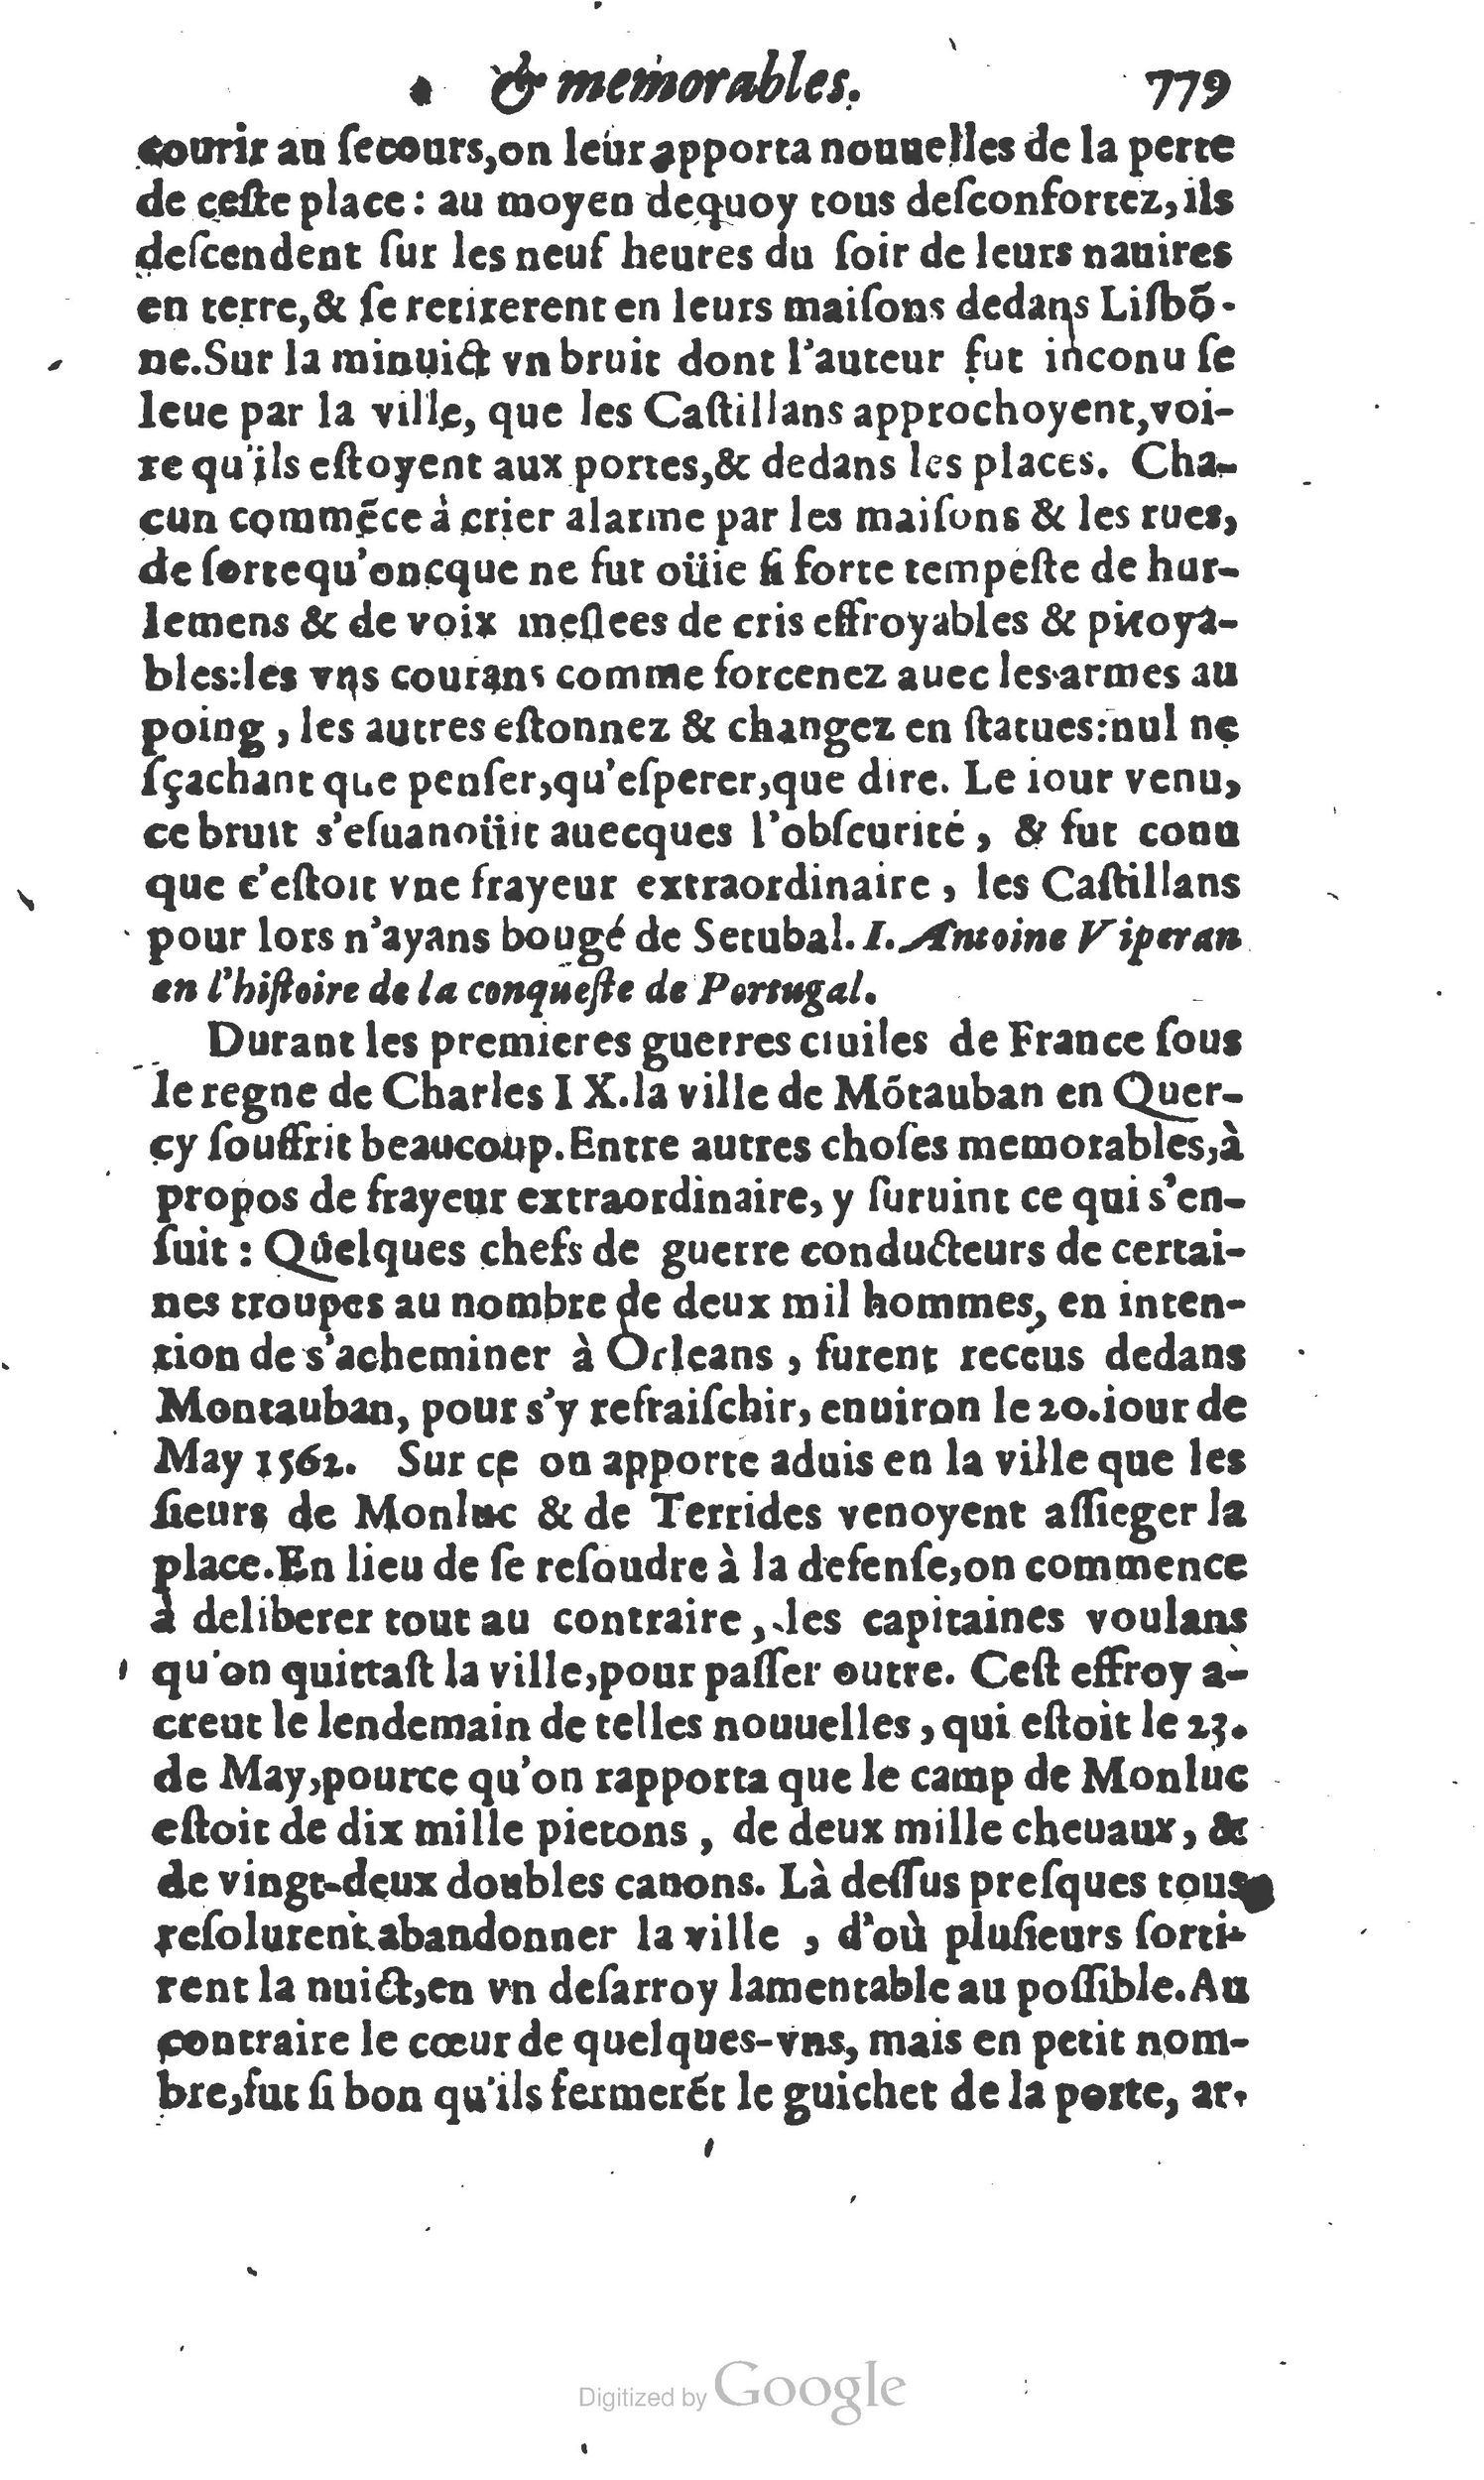 1610 Trésor d’histoires admirables et mémorables de nostre temps Marceau Princeton_Page_0800.jpg